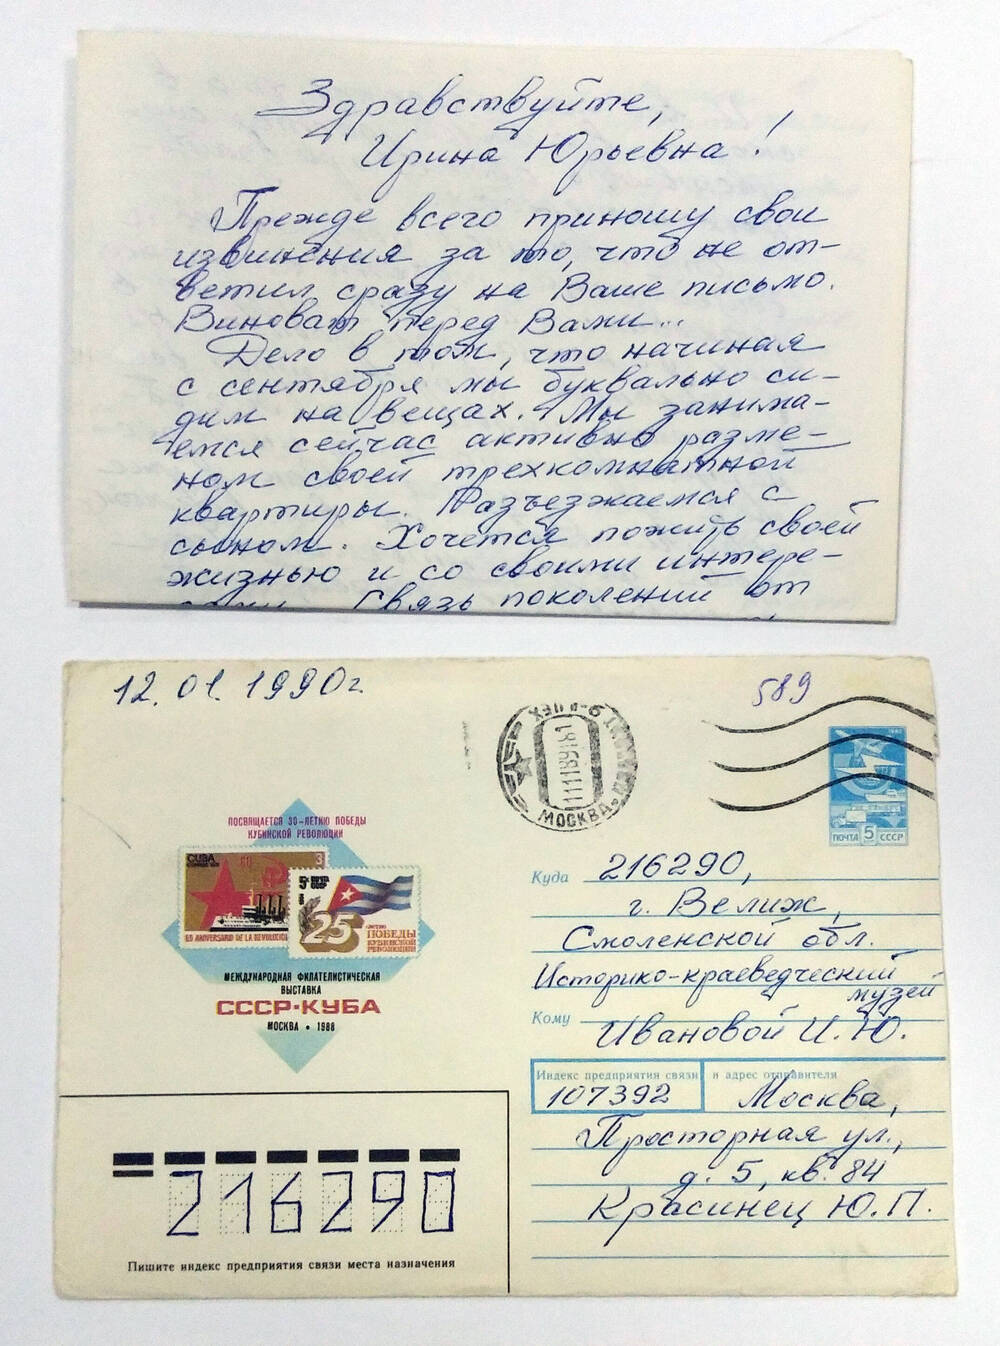 Письмо Ивановой Ирине Юрьевне от Красинца Юрия Петровича. 11.11.1989 г.